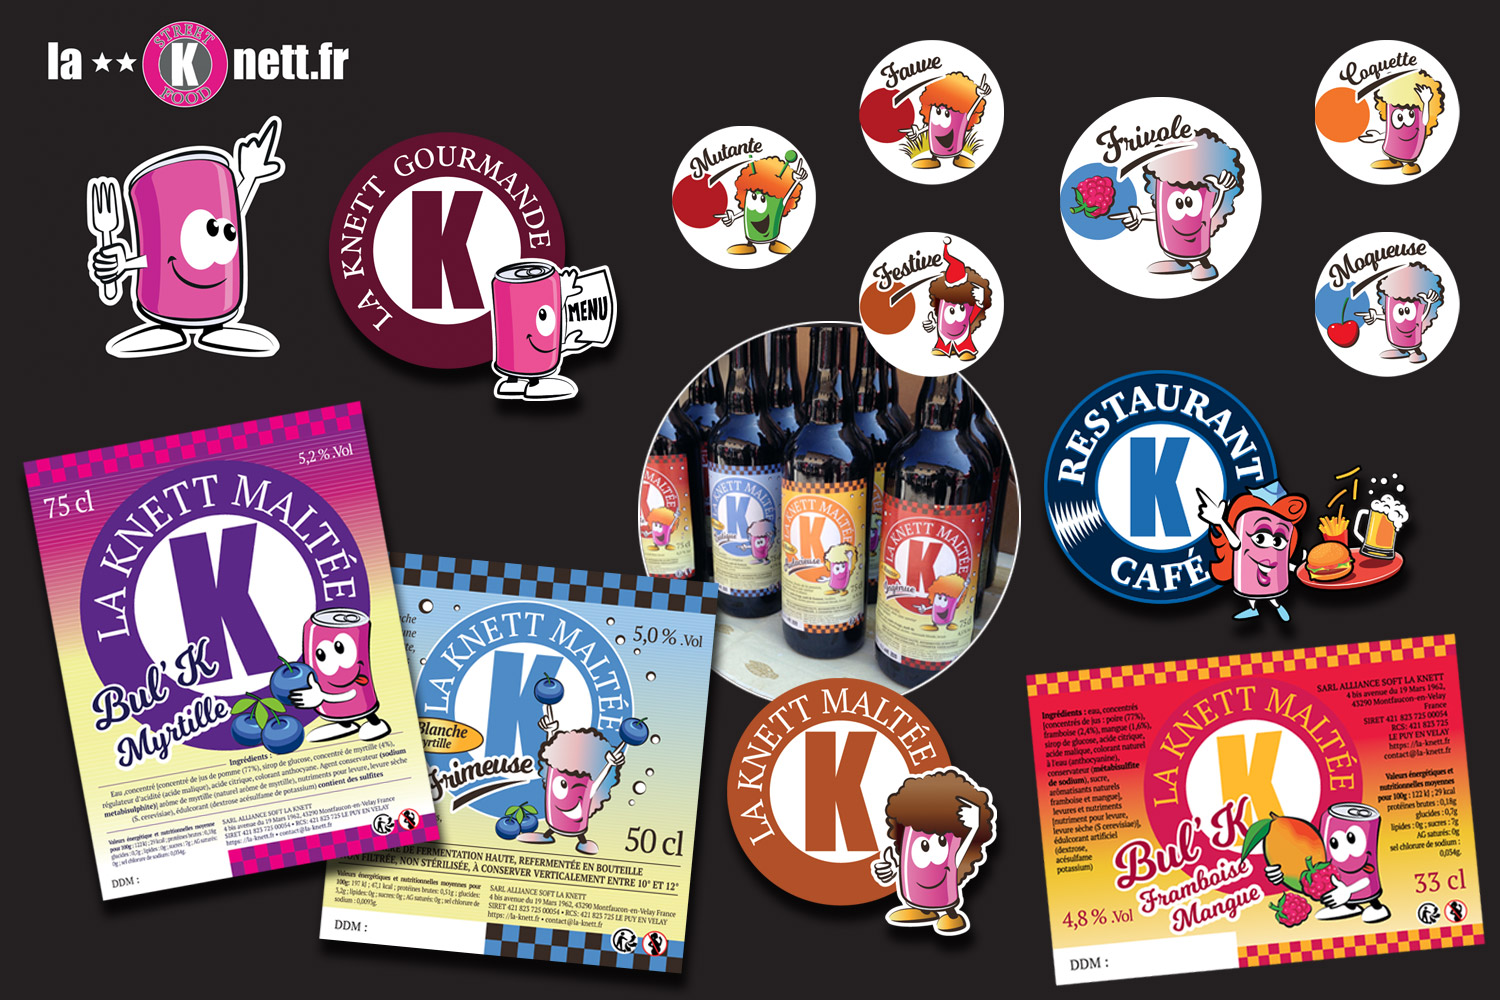 Knett maltée - branding : - étiquettes bières, cidres, pictos, personnages